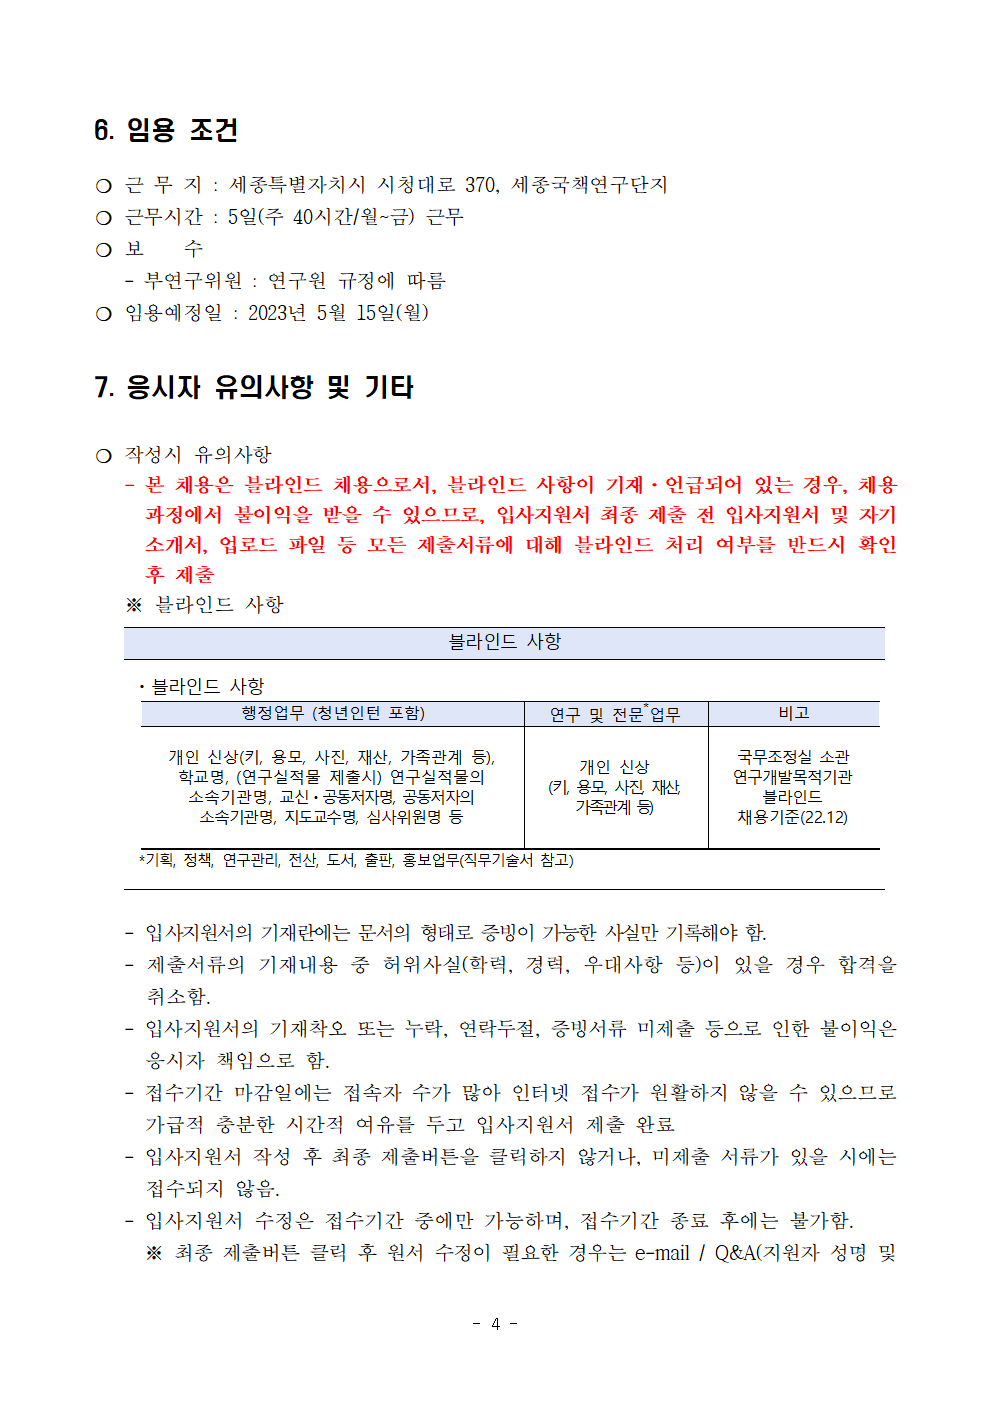 (4/5) [한국청소년정책연구원] 육아휴직 대체인력 채용 공고문 - 자세한 내용은 하단 참조